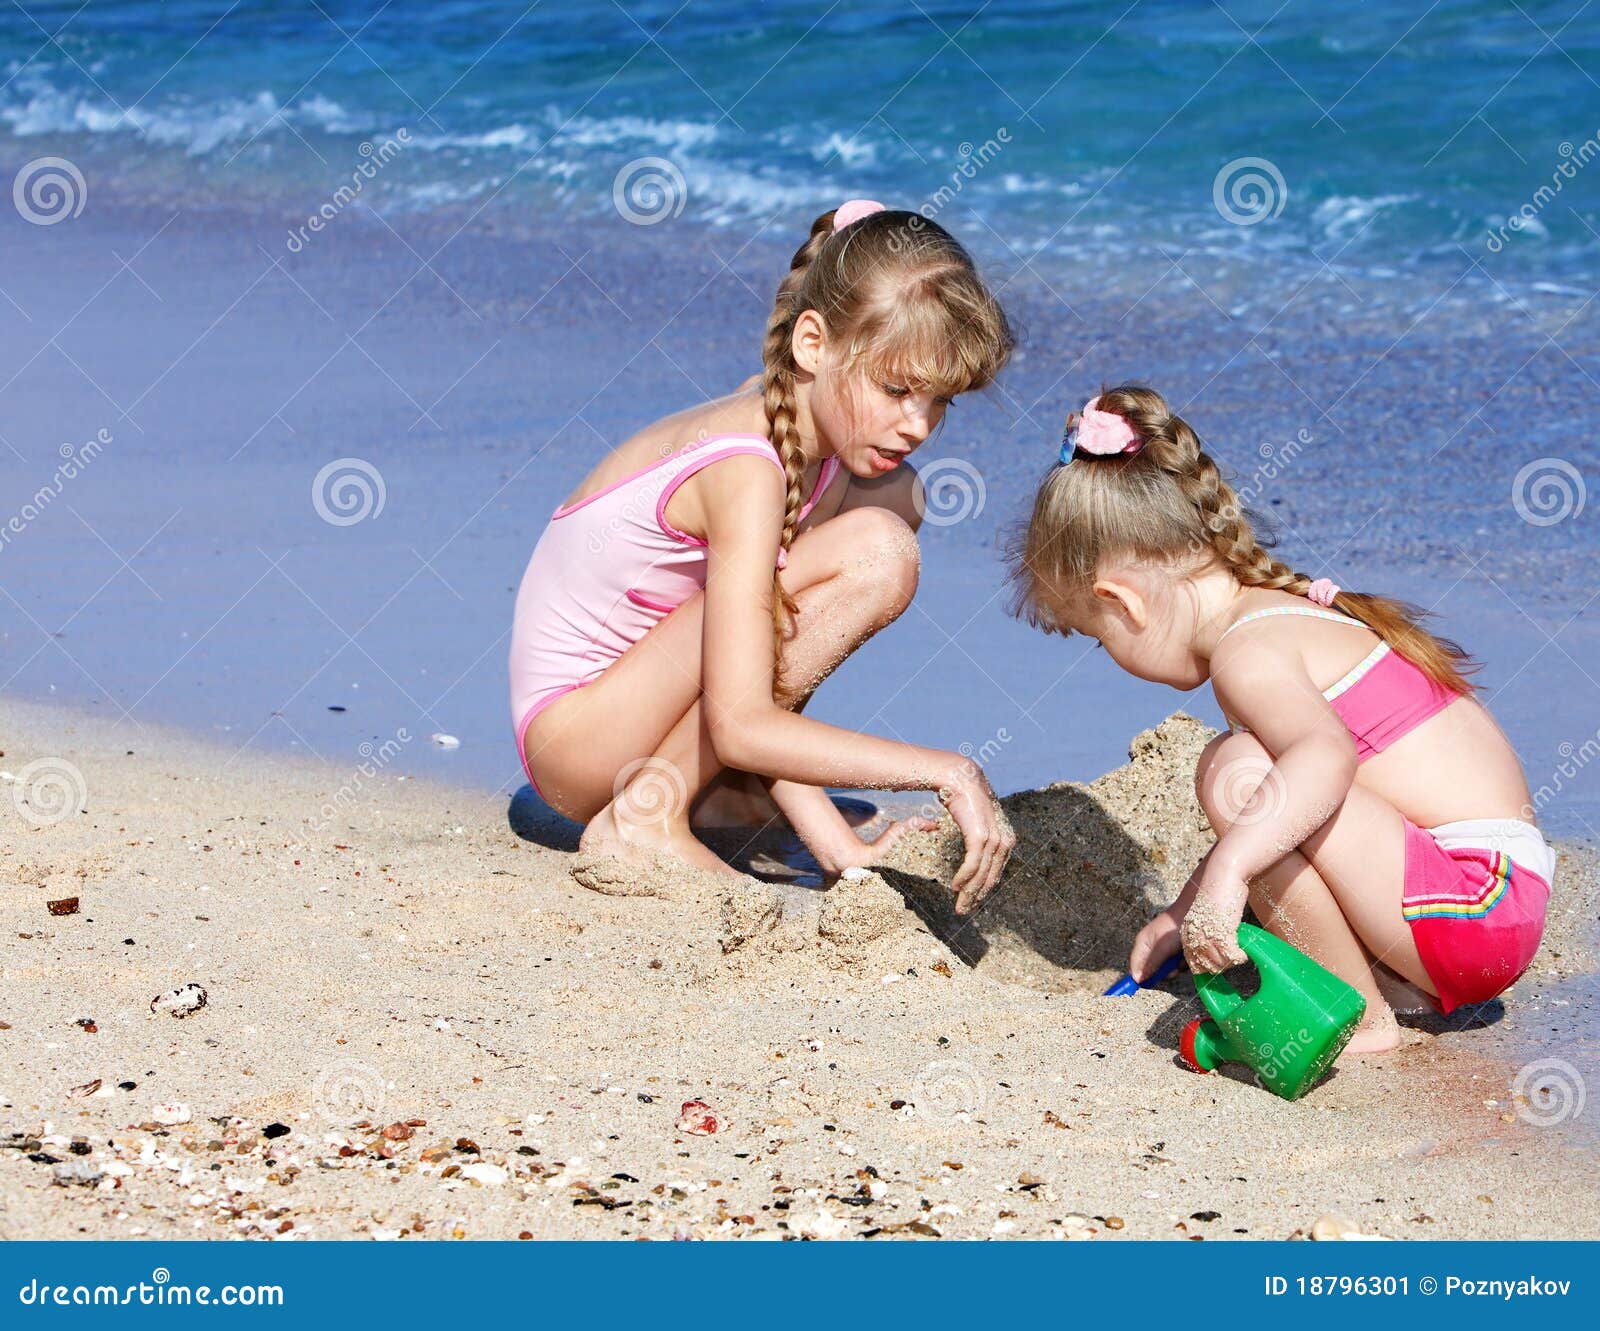 с детьми голым на пляж фото 79